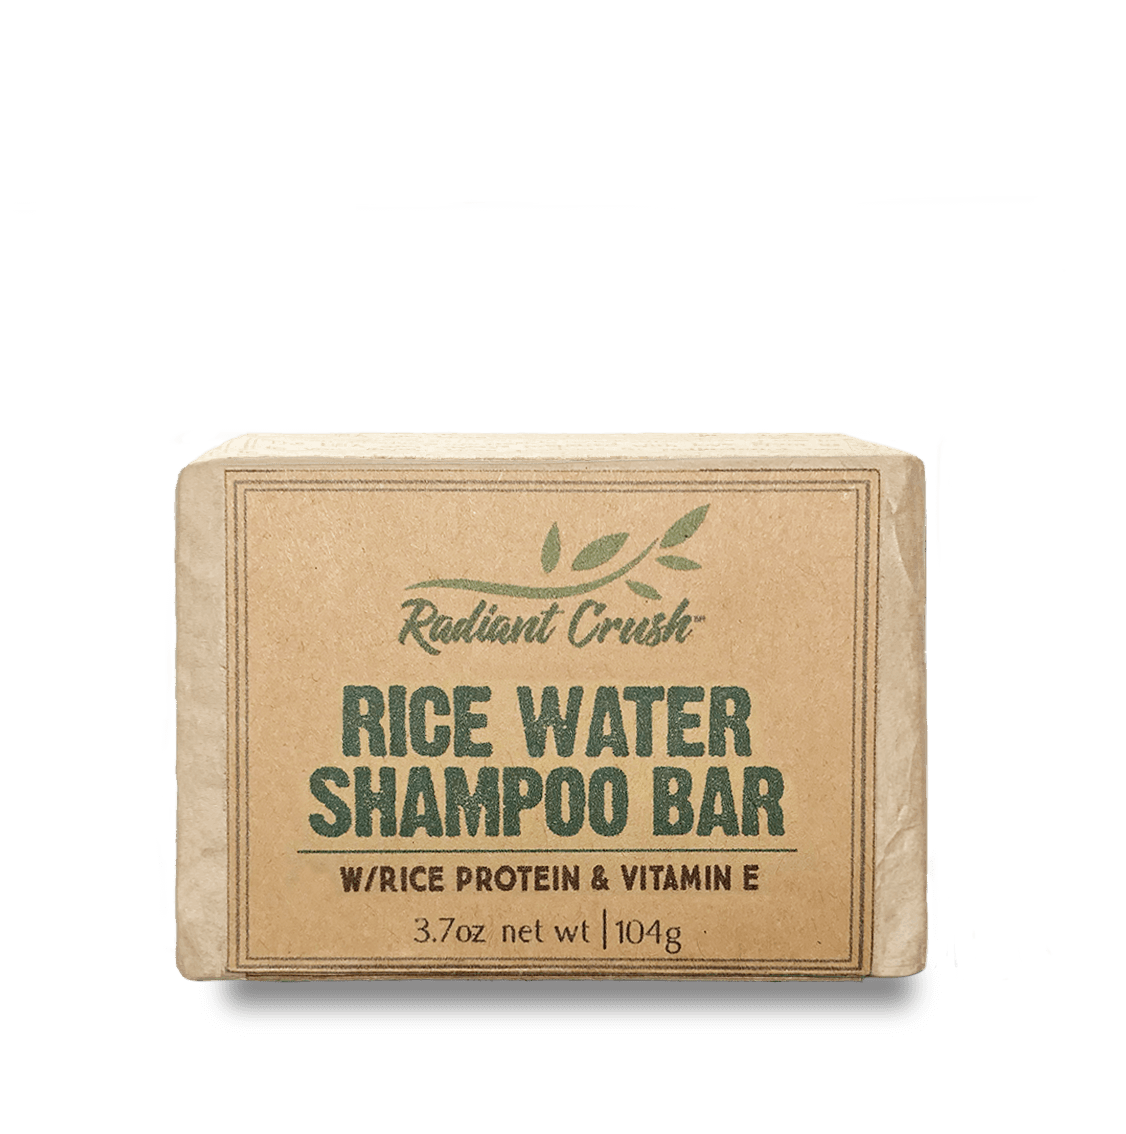 Rice Water Shampoo Bar